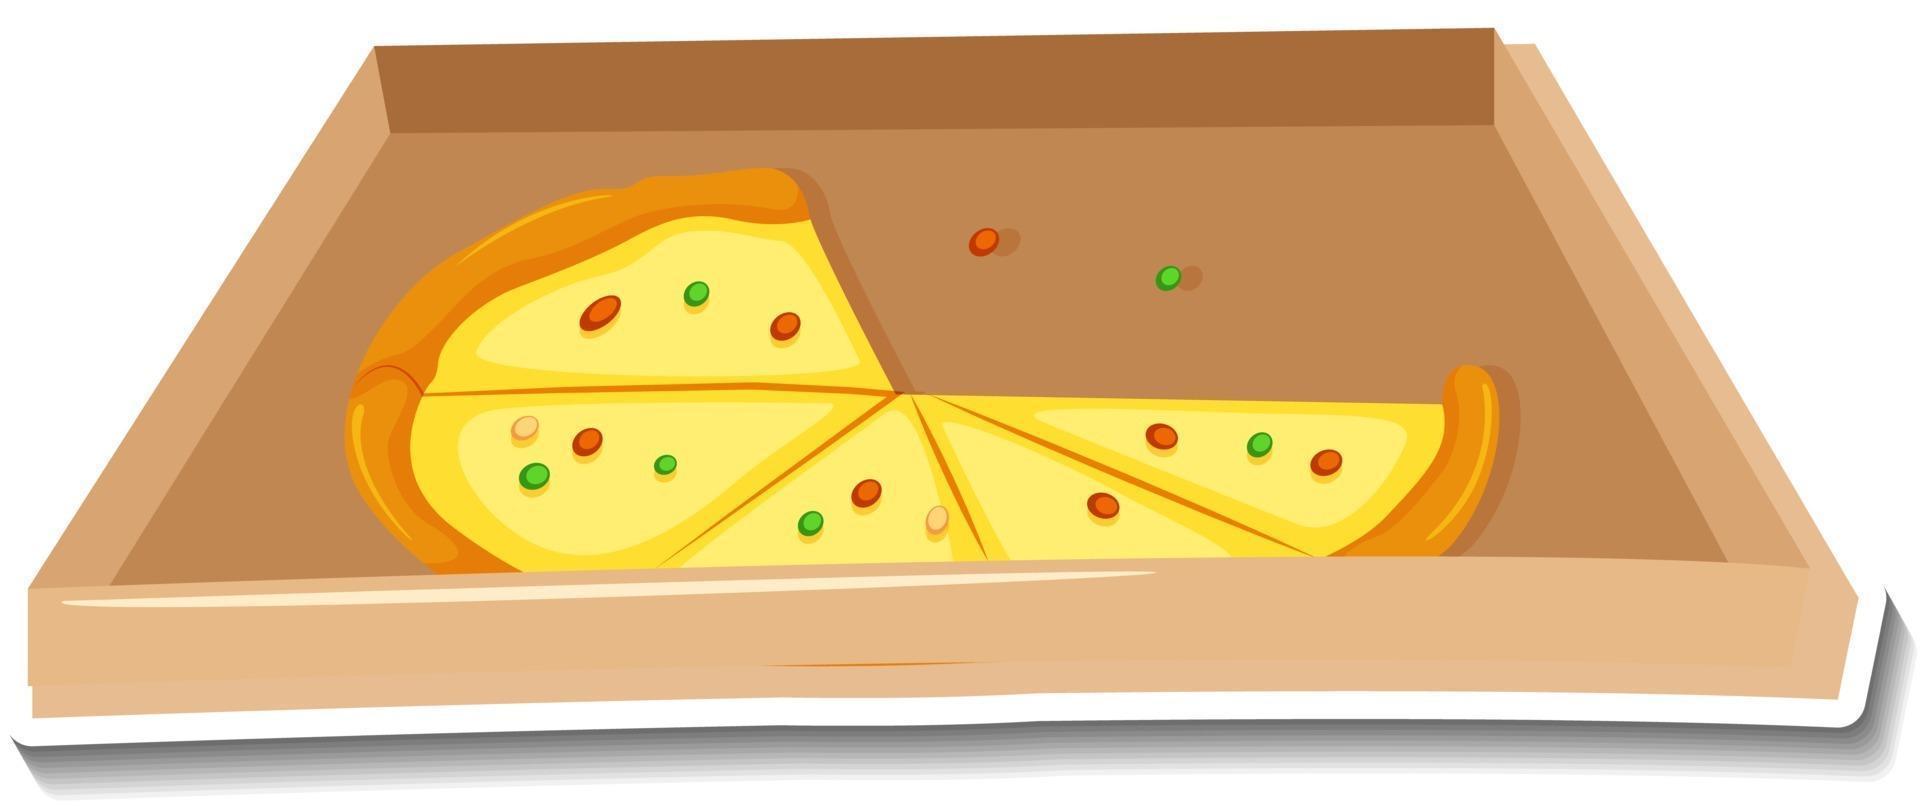 adesivo pizza in scatola su sfondo bianco vettore